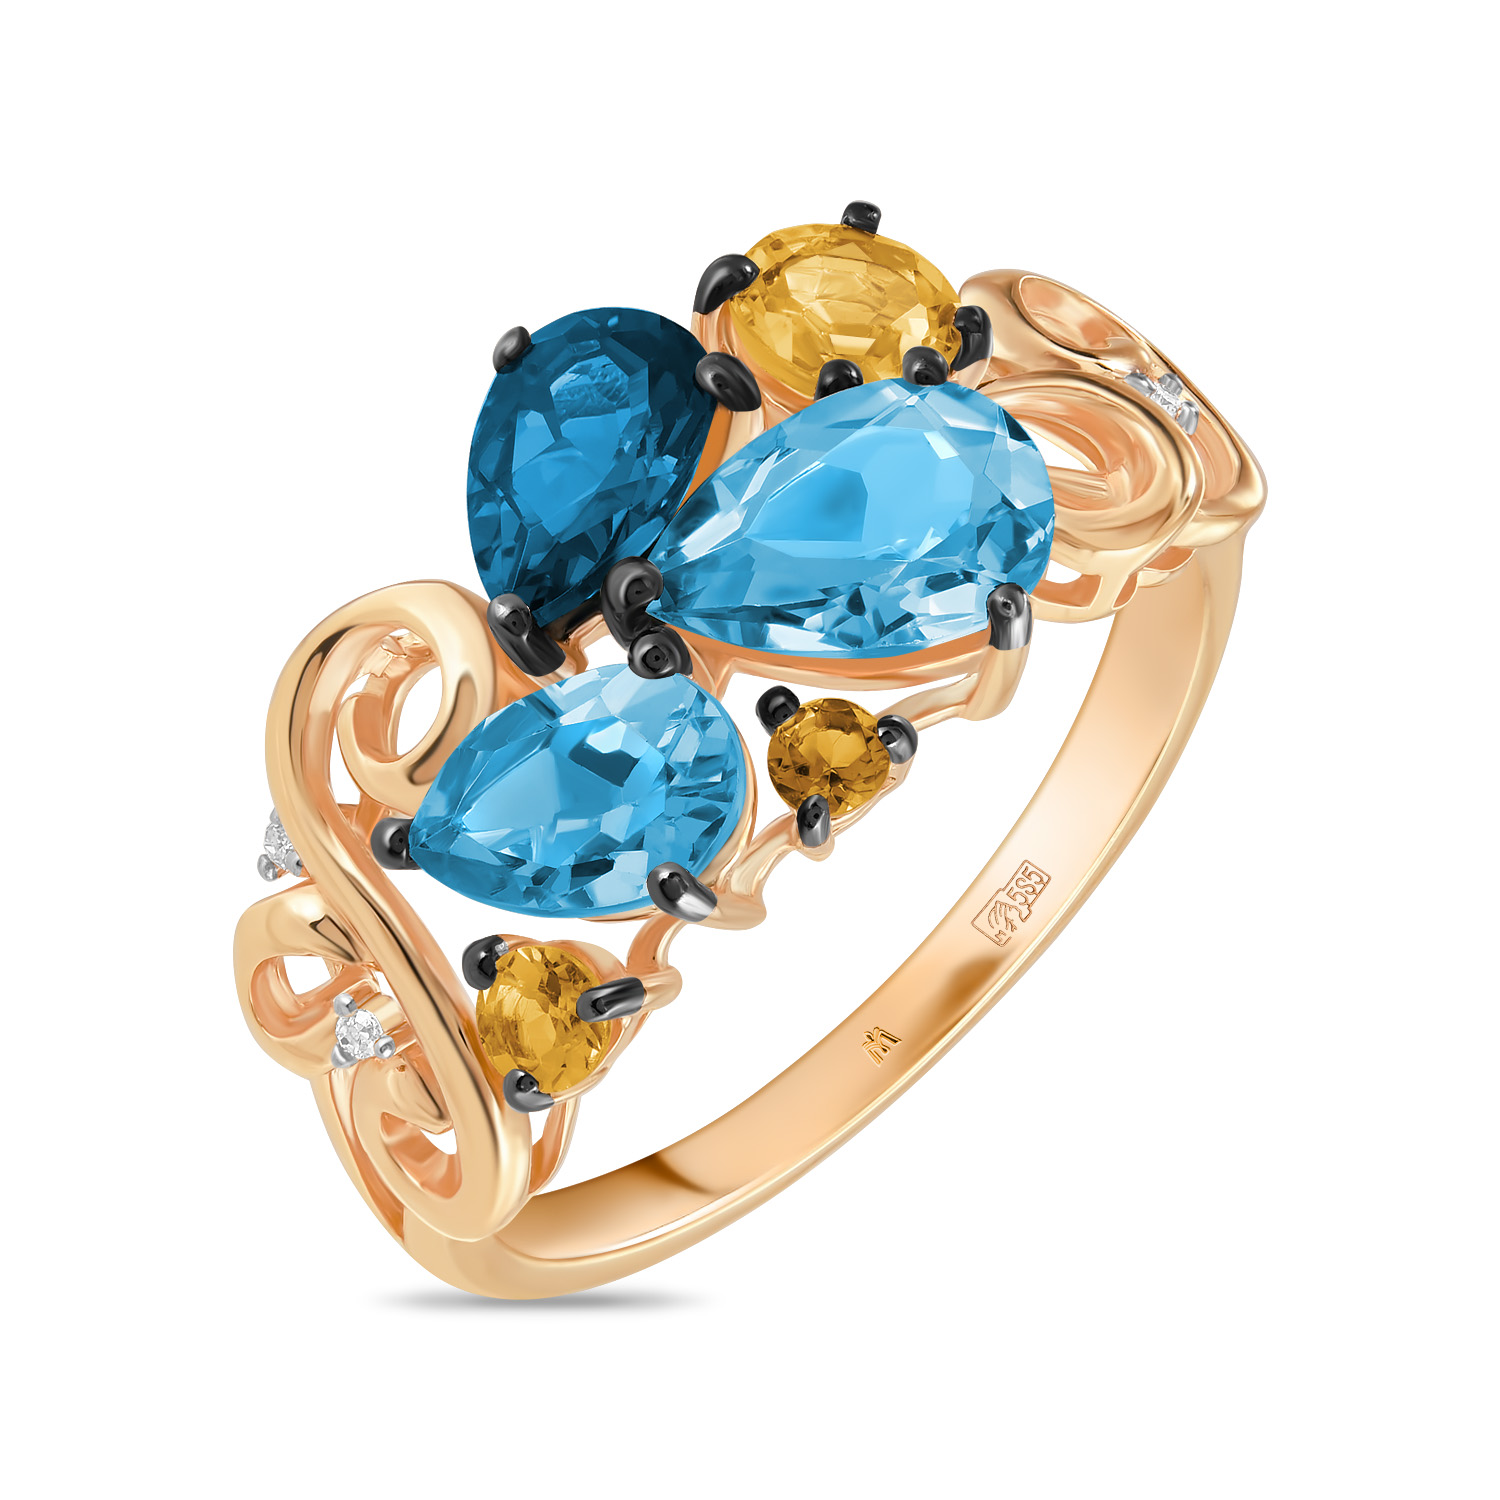 Кольца МЮЗ Золотое кольцо с топазом, цитрином и бриллиантами кольца мюз золотое кольцо с аметистом топазом цитрином бриллиантами и цветными бриллиантами